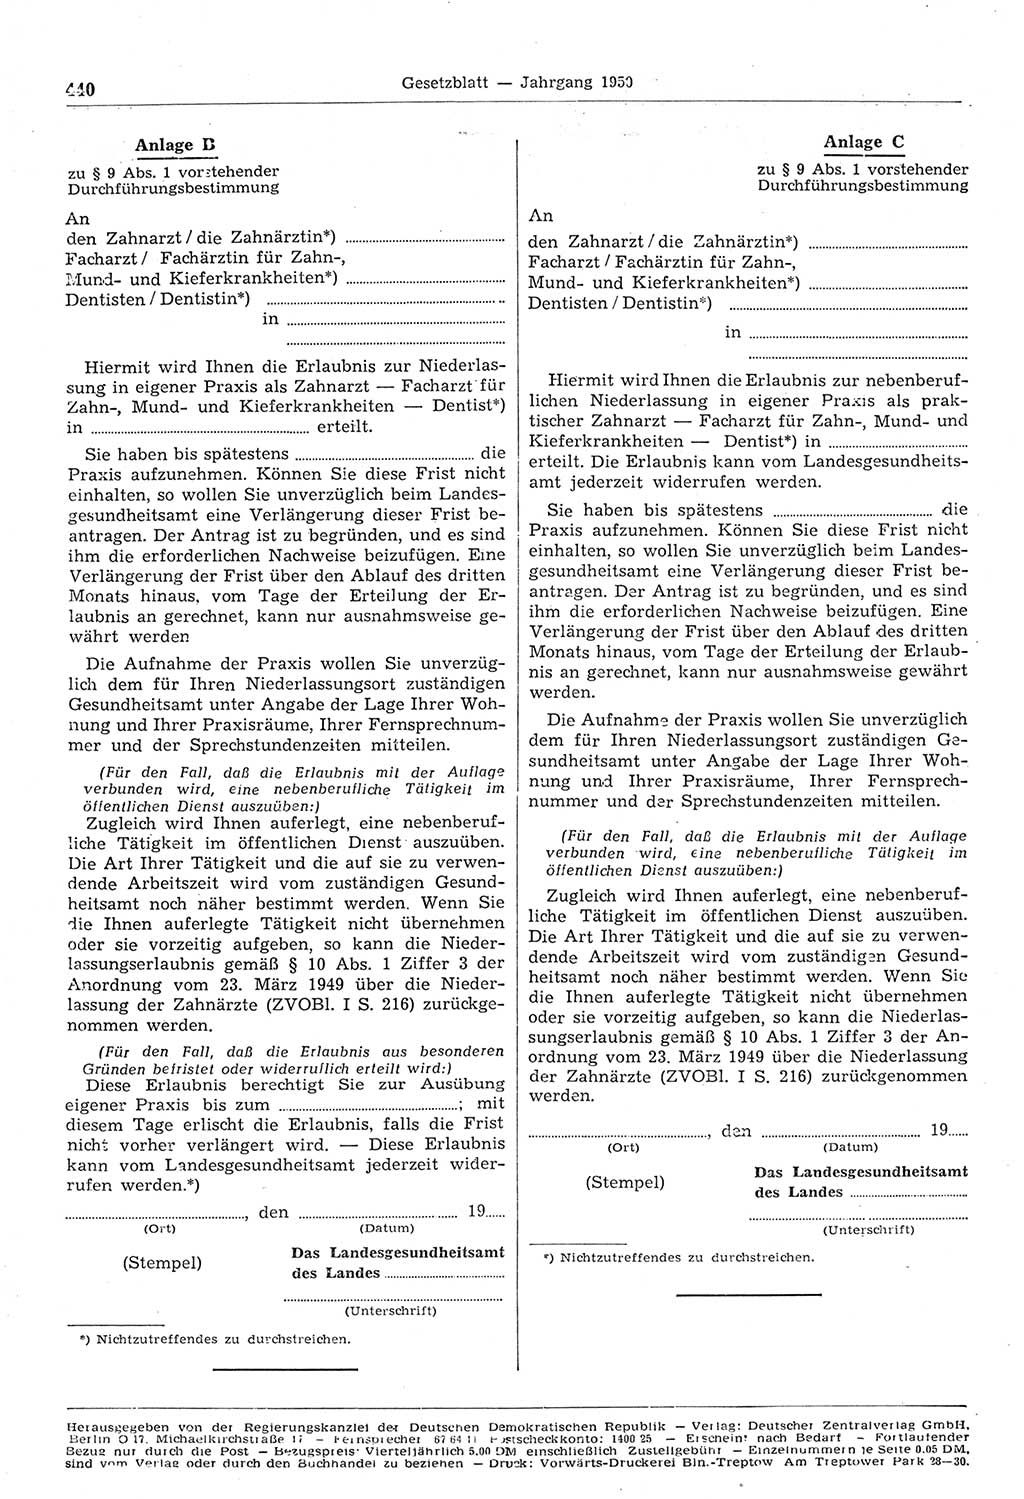 Gesetzblatt (GBl.) der Deutschen Demokratischen Republik (DDR) 1950, Seite 440 (GBl. DDR 1950, S. 440)